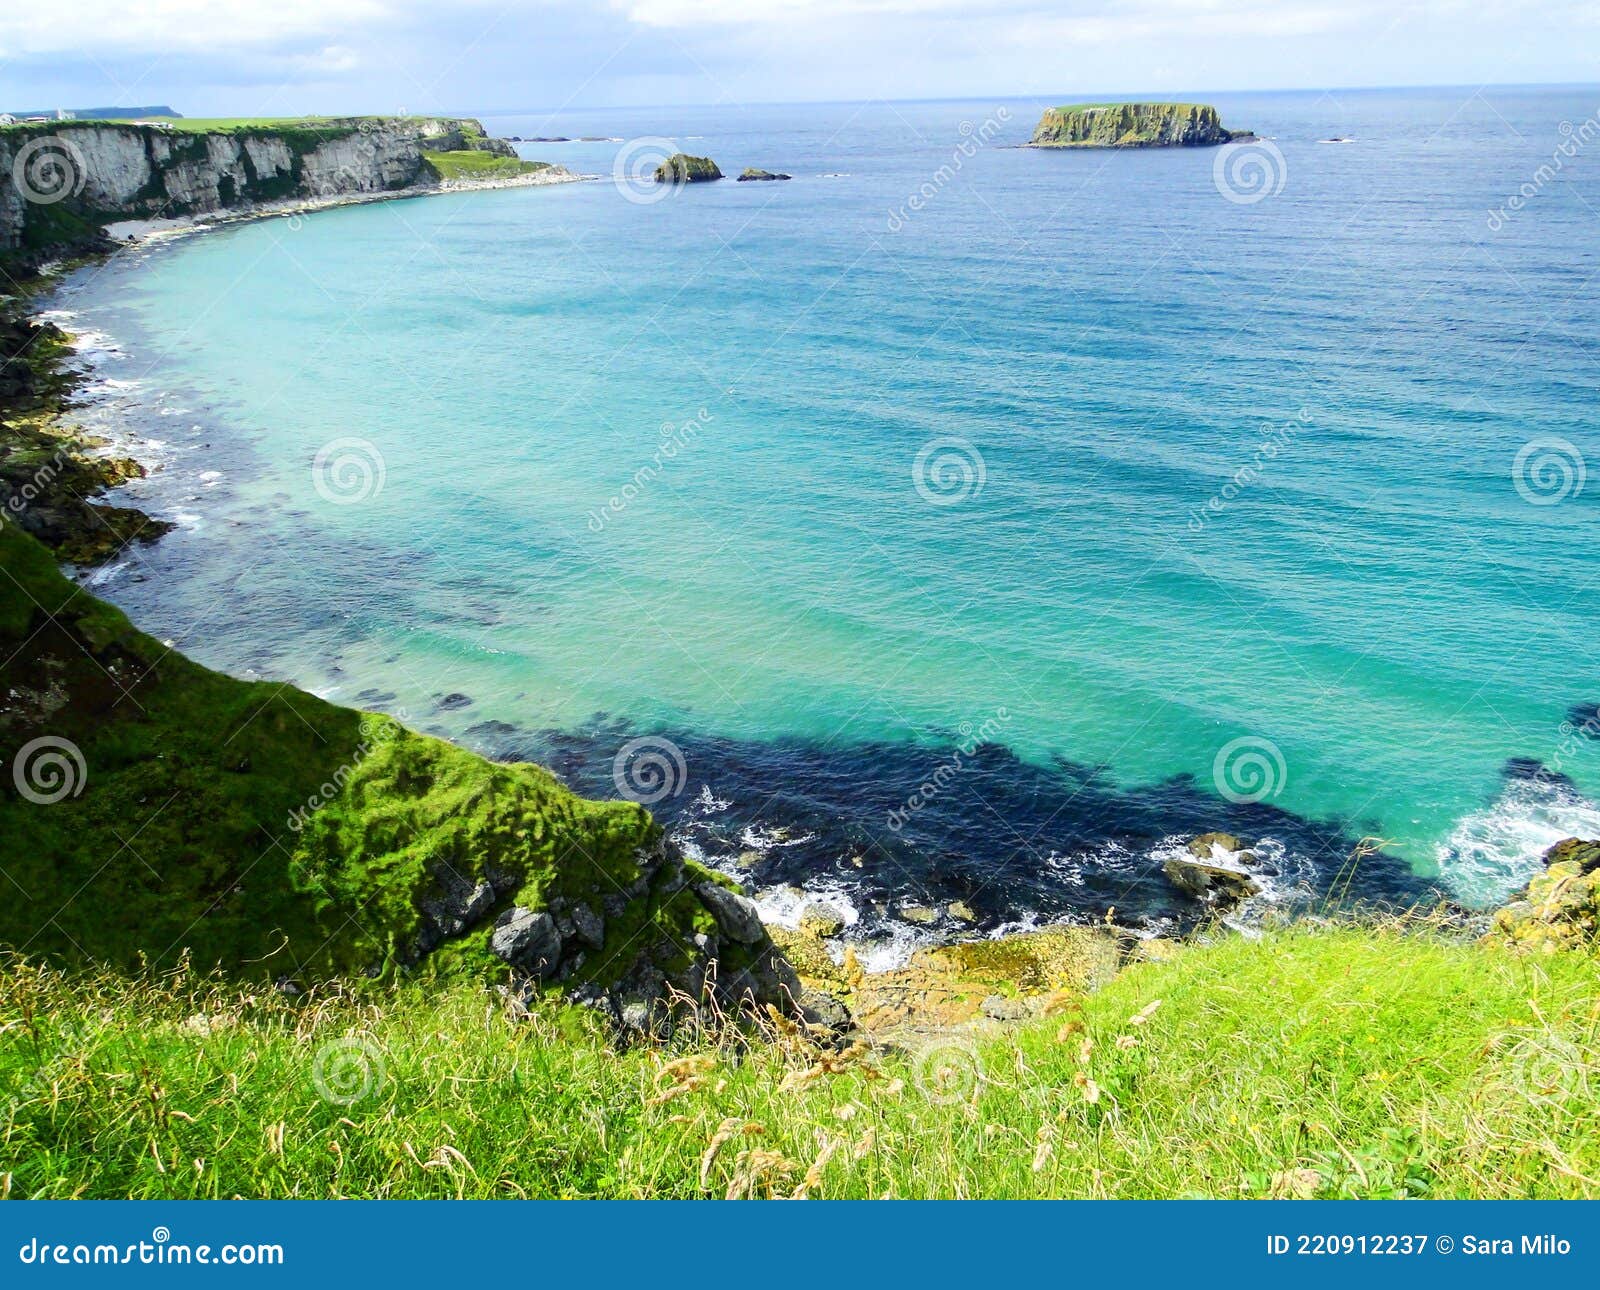 ireland,panoramic view sea -irlanda panorama marino